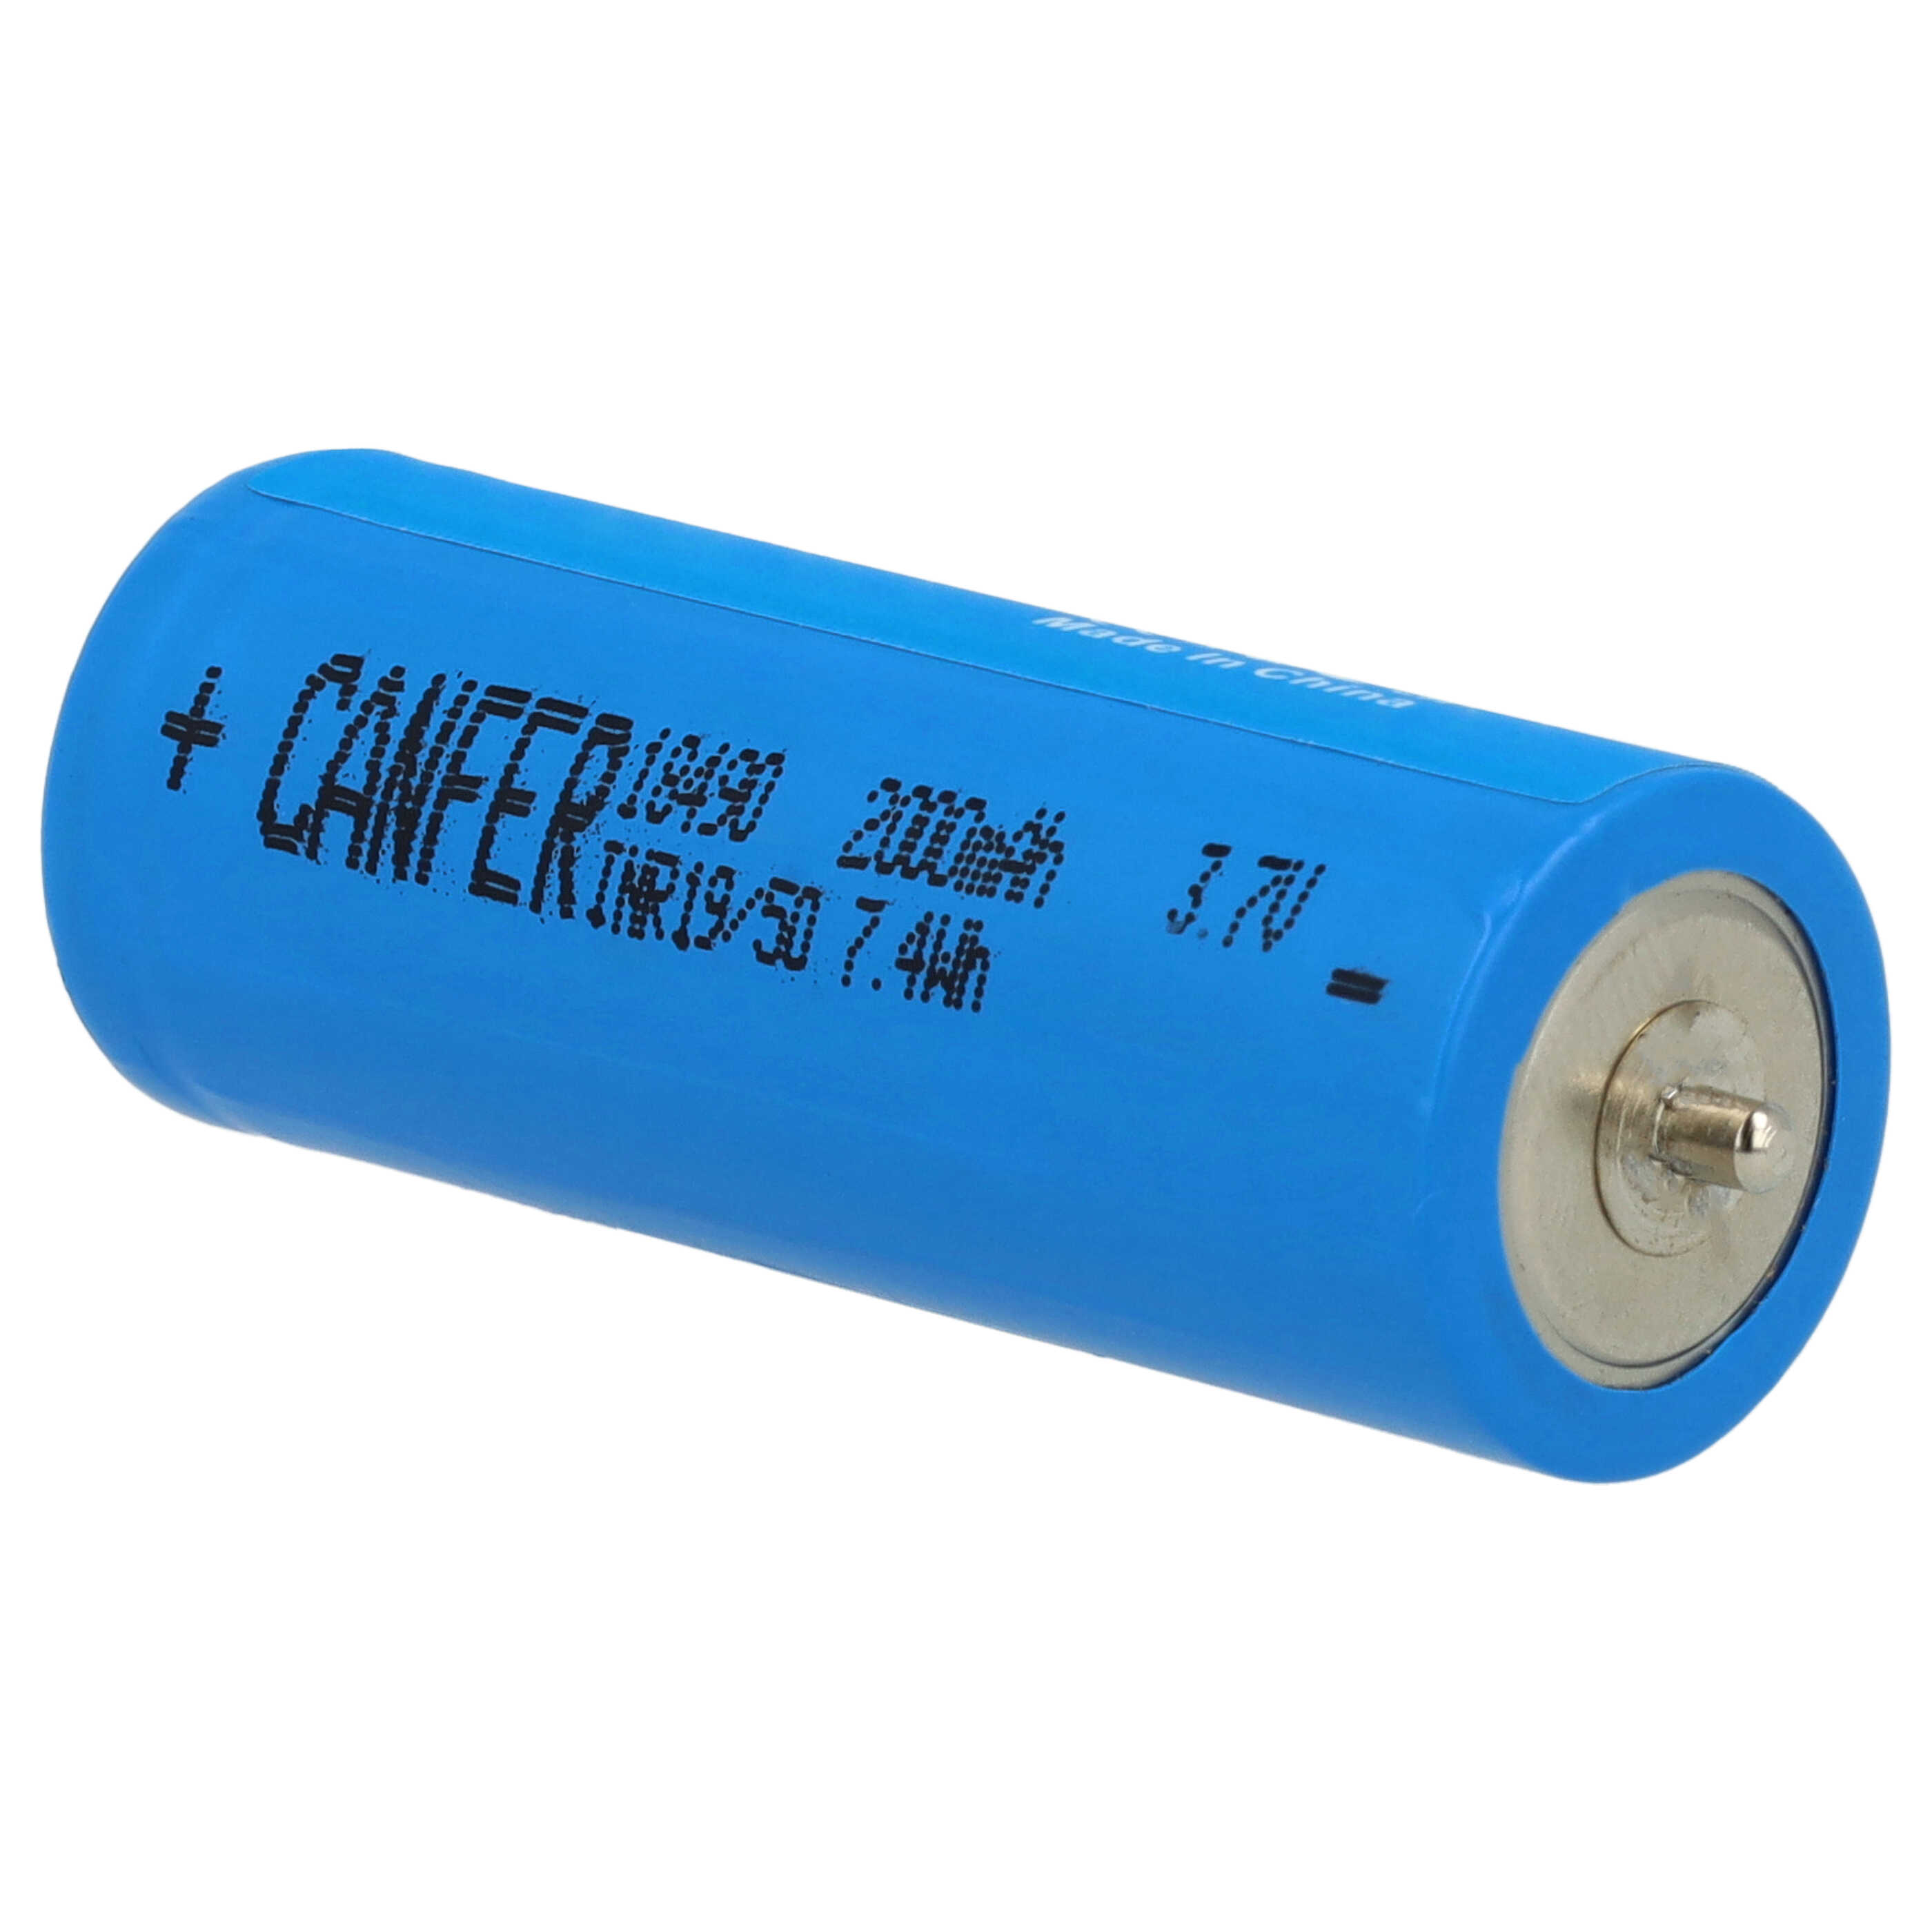 Batterie remplace Braun 67030924, 3018765, 67030925, 67030625 pour rasoir électrique - 1900mAh 3,6V Li-ion